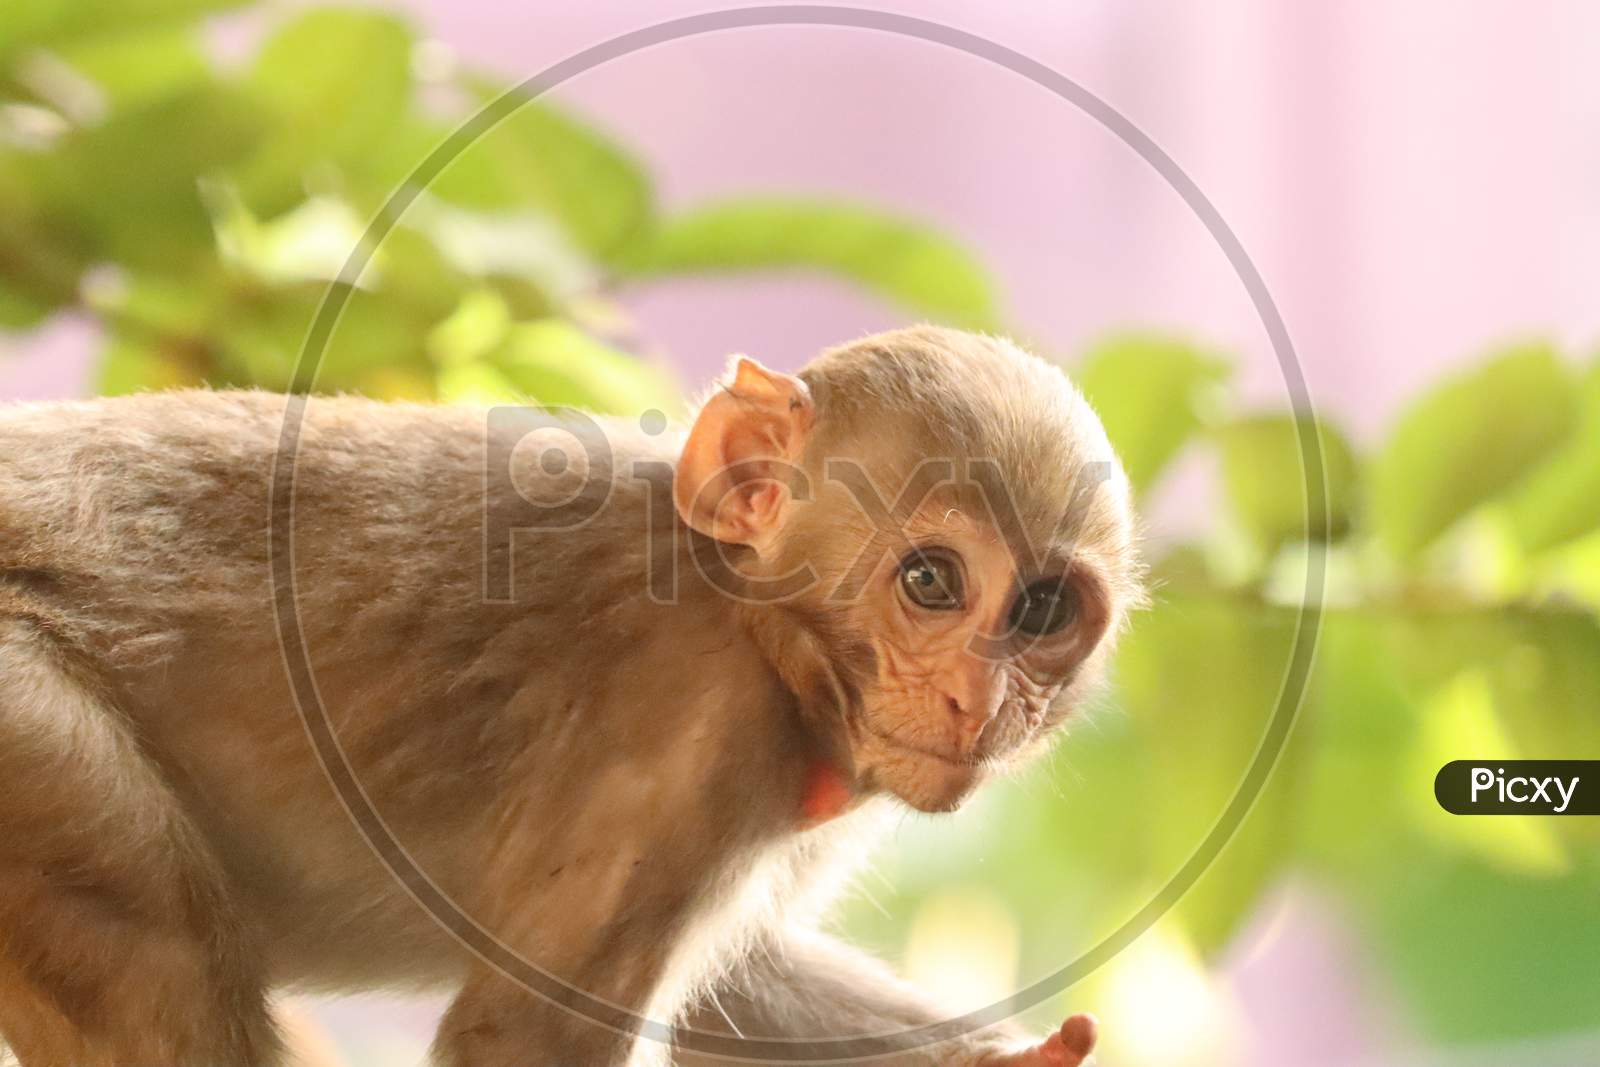 Indian baby monkey, stock image